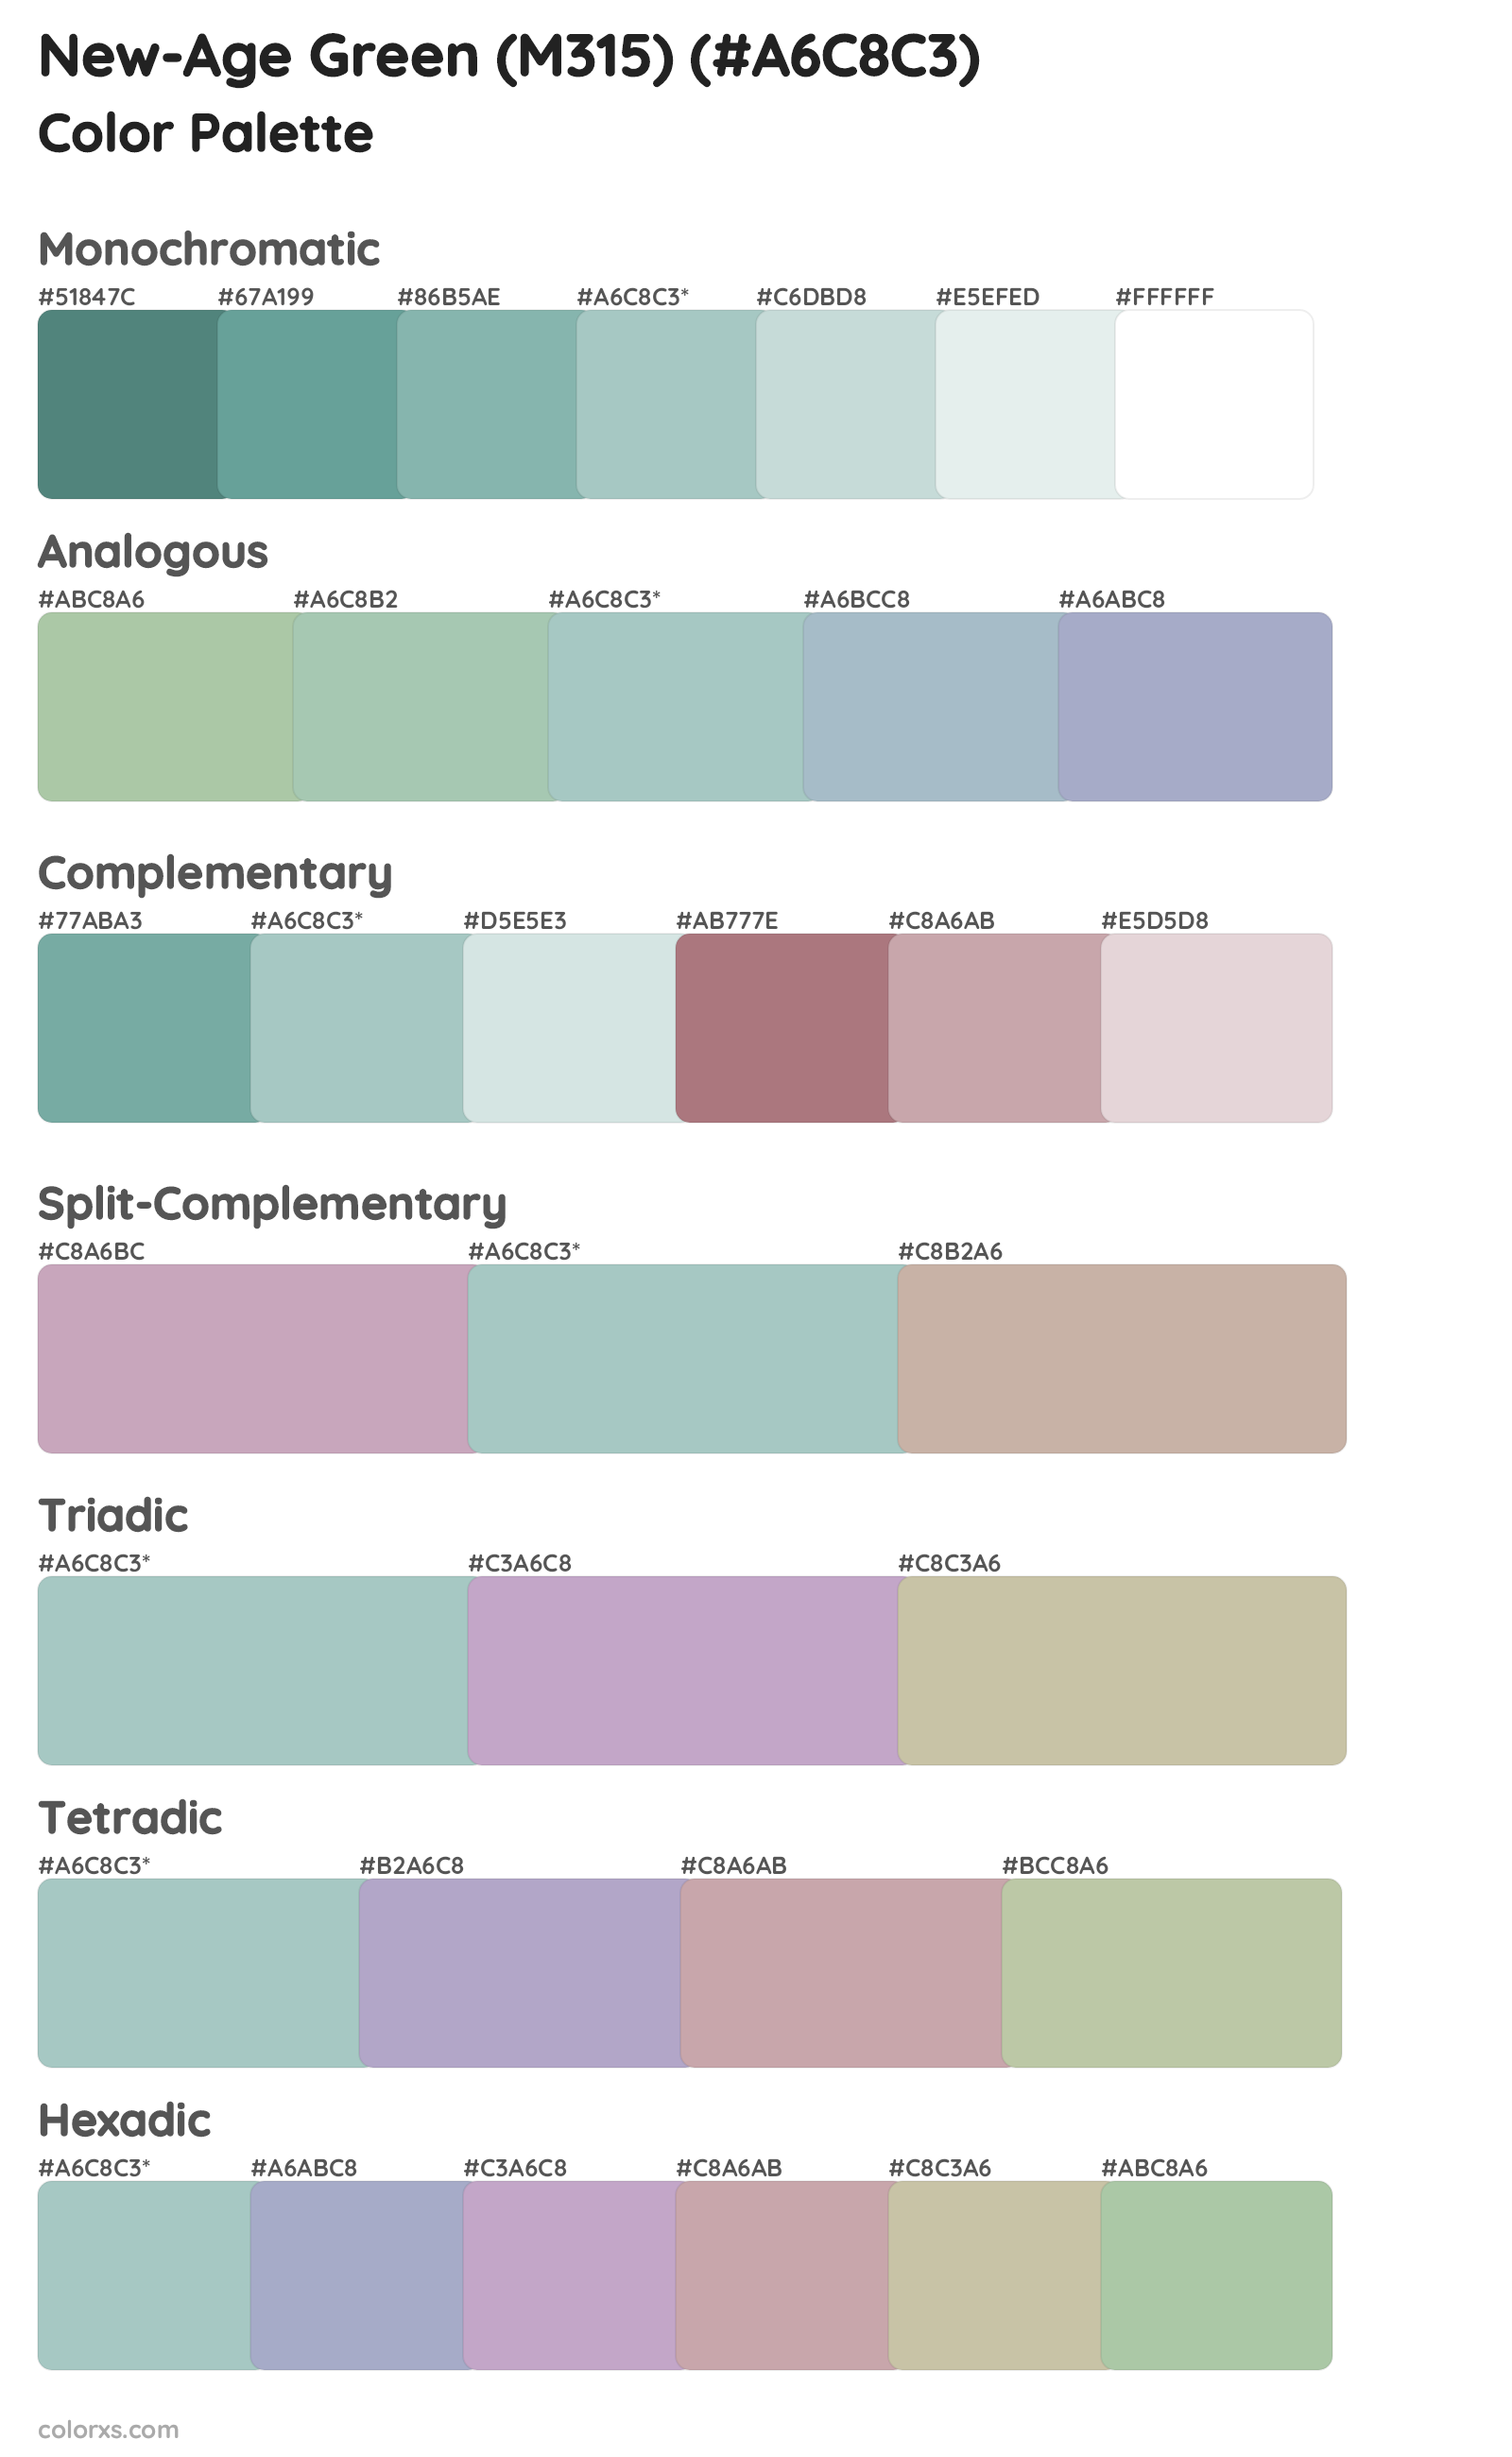 New-Age Green (M315) Color Scheme Palettes